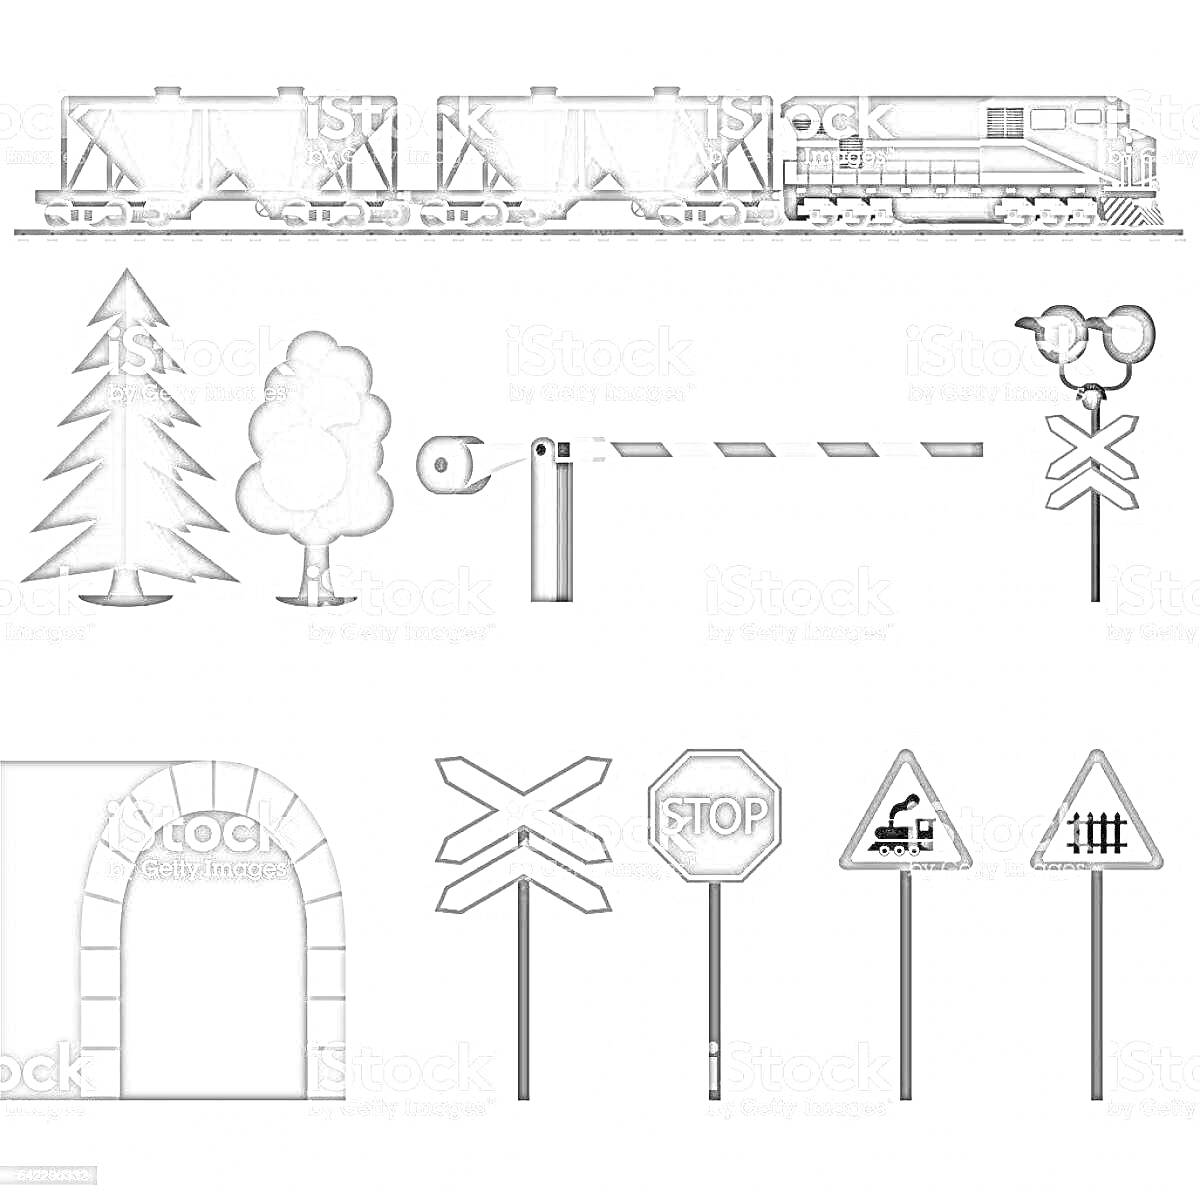 Железнодорожный переезд с паровозом, вагонами, деревьями, шлагбаумом, светофором, дорожными знаками и туннелем.